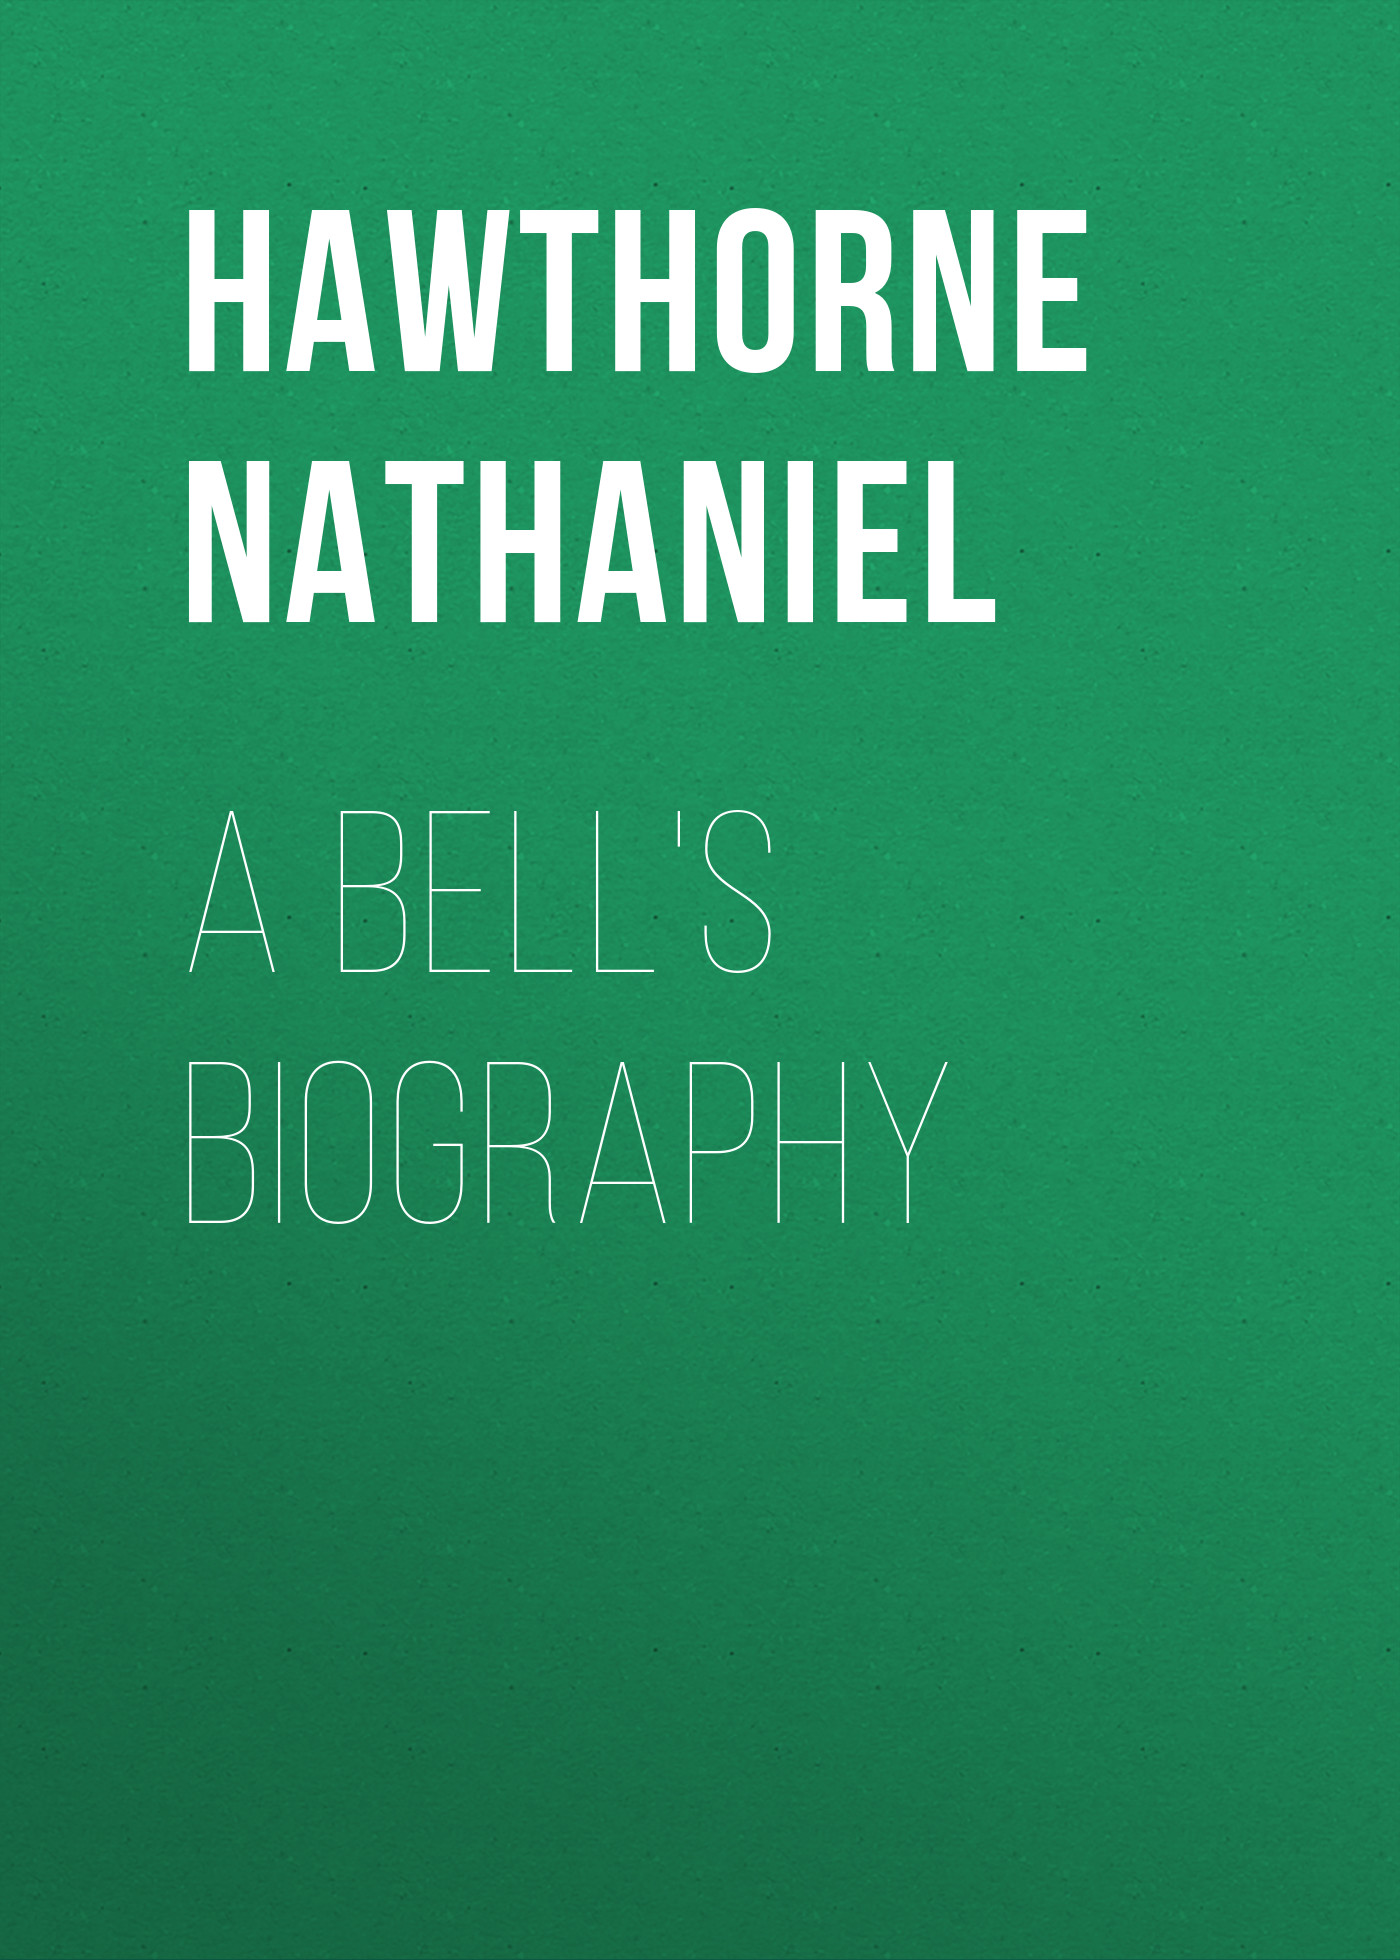 Книга A Bell's Biography из серии , созданная Nathaniel Hawthorne, может относится к жанру Литература 19 века, Зарубежная старинная литература, Зарубежная классика. Стоимость электронной книги A Bell's Biography с идентификатором 25560796 составляет 0 руб.